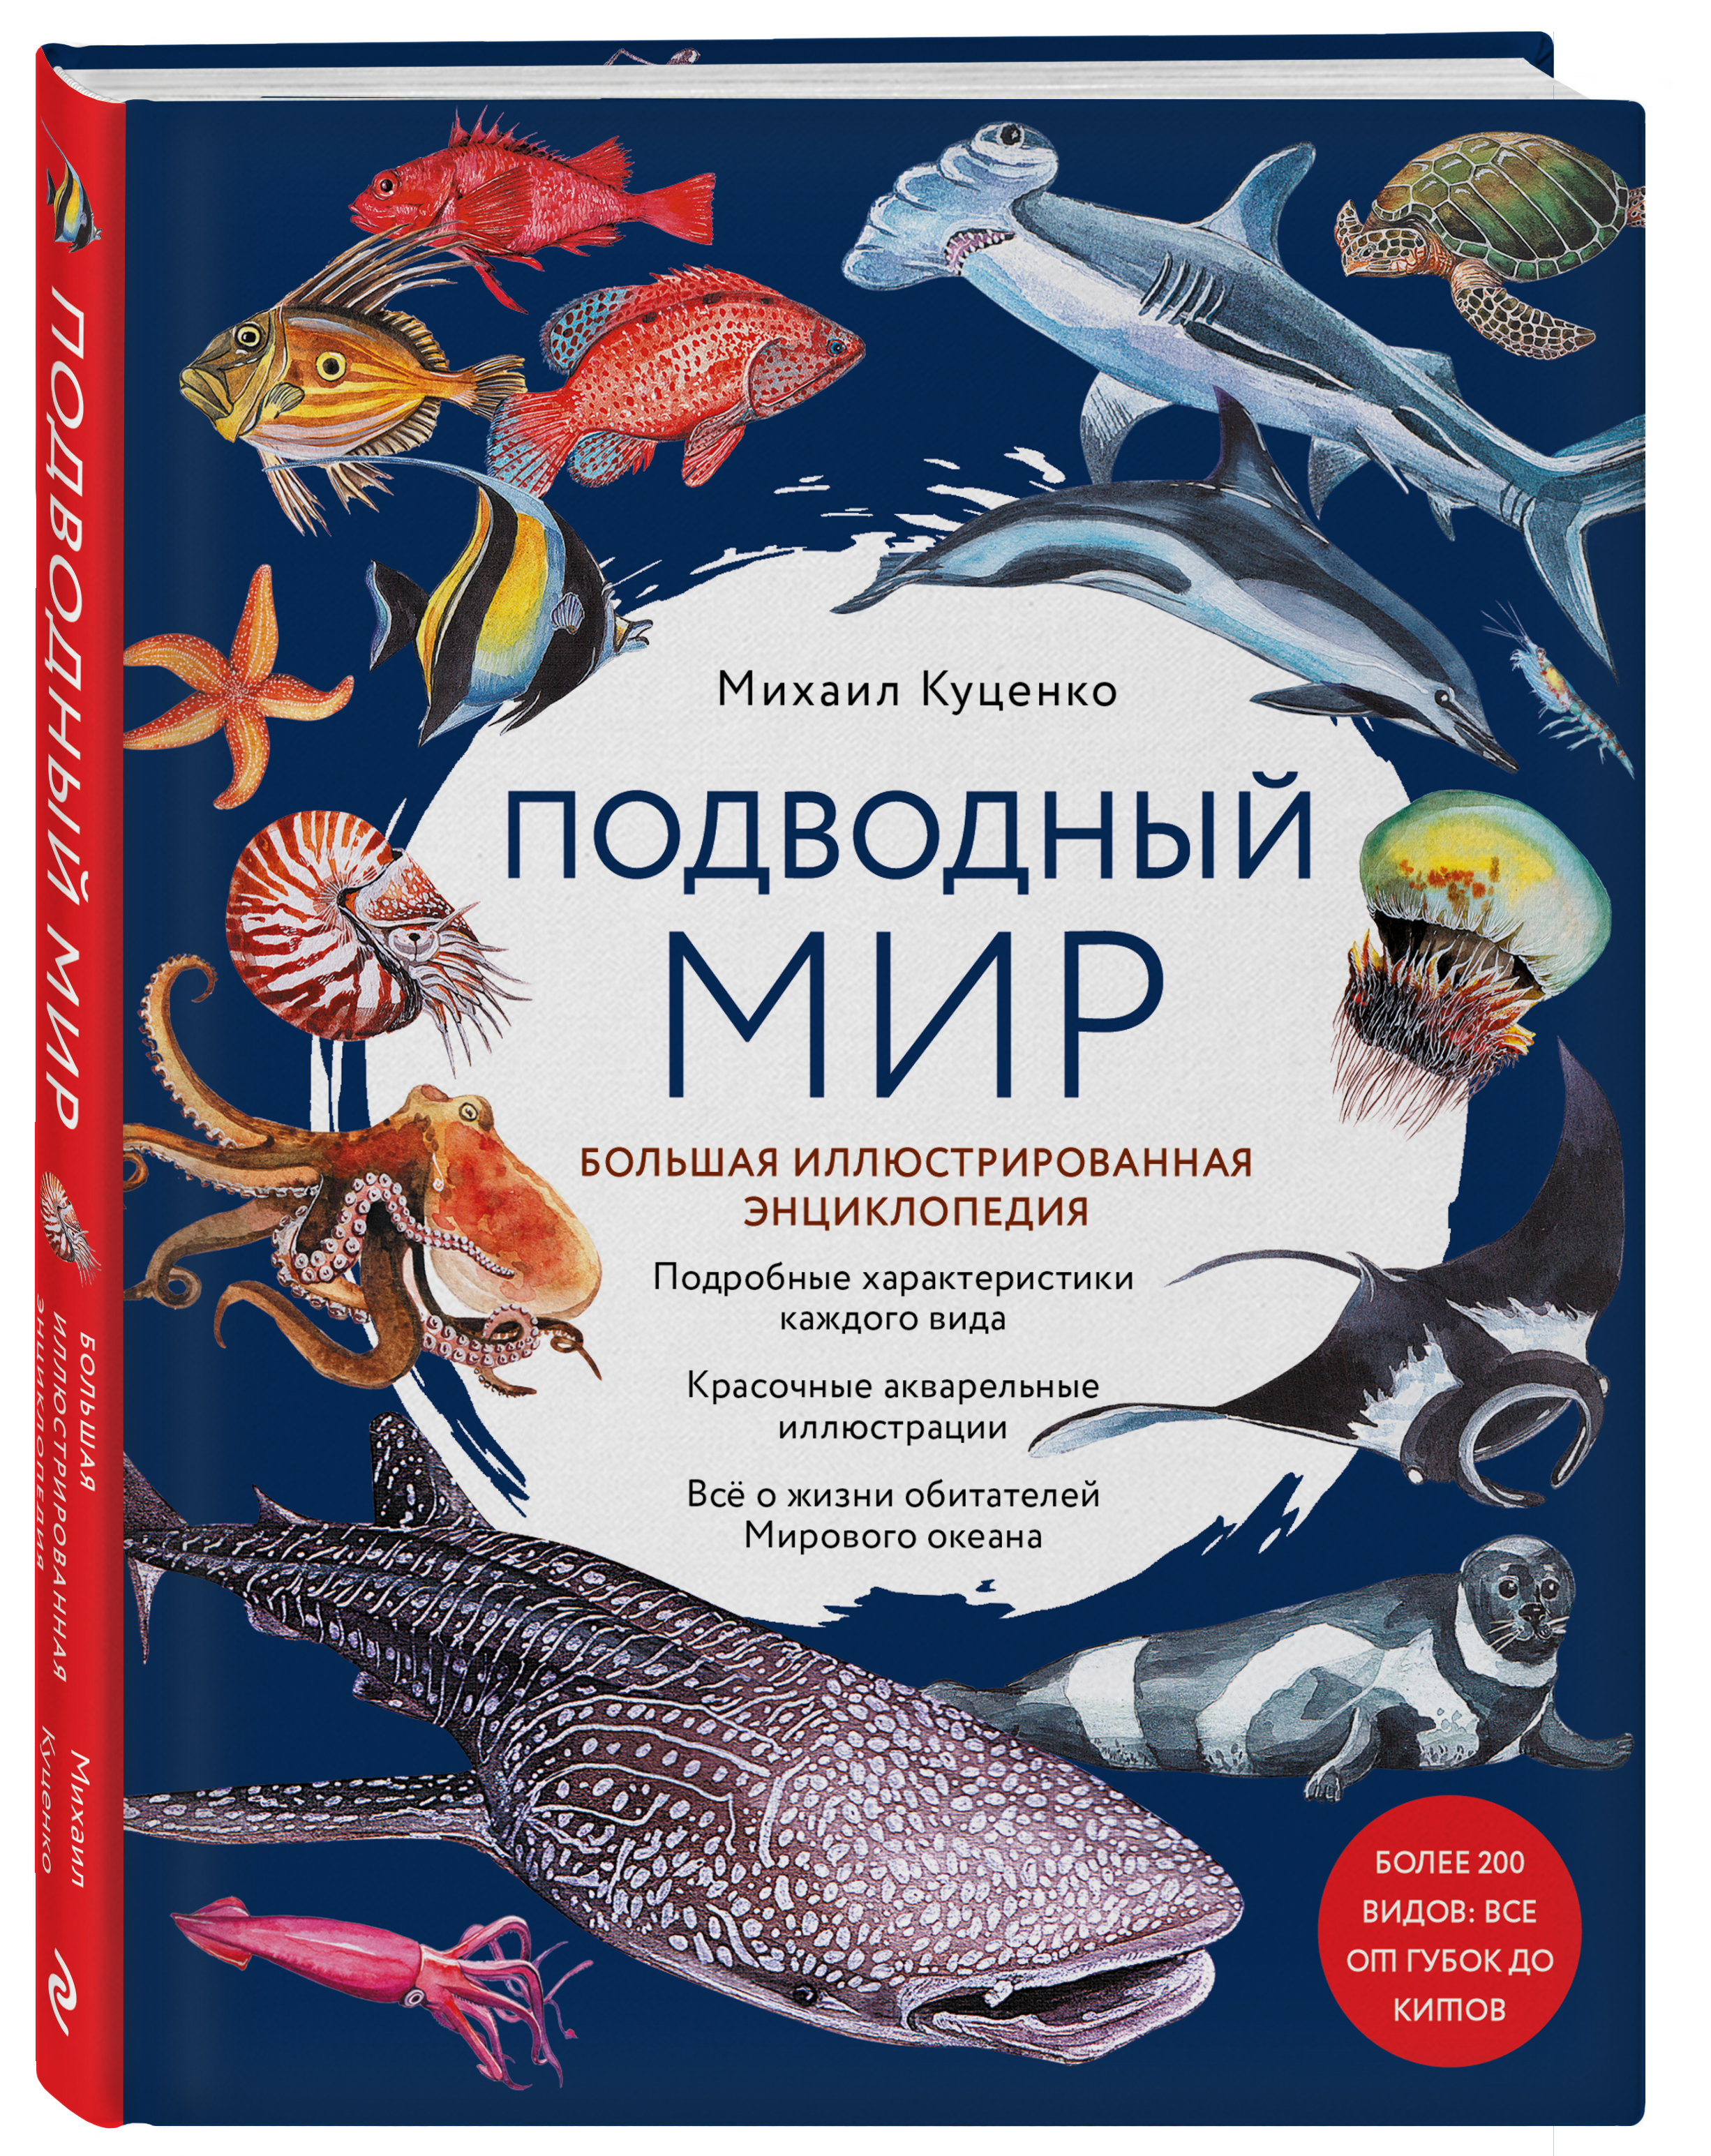 Подводный мир: Большая иллюстрированная энциклопедия